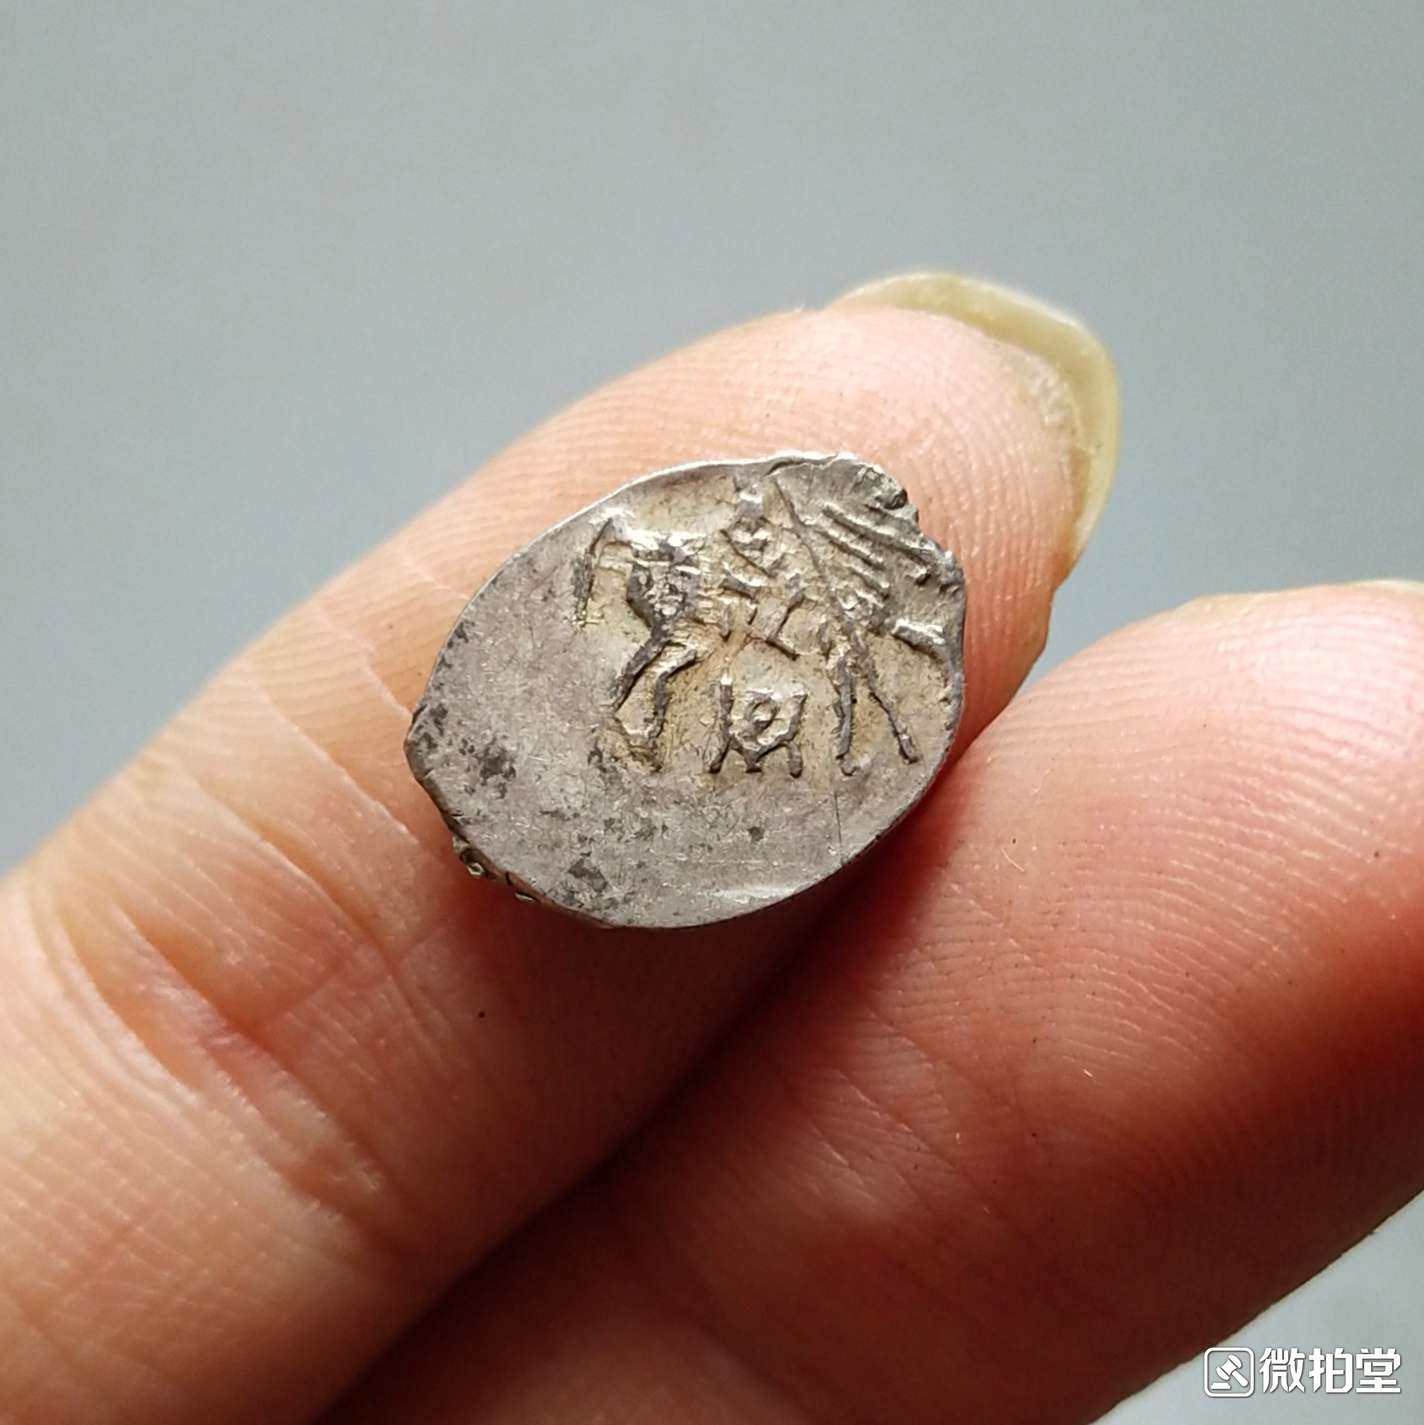 沙俄早期,1戈比银币,正面图案为切割开的圣乔治屠龙图案,背面为铭文